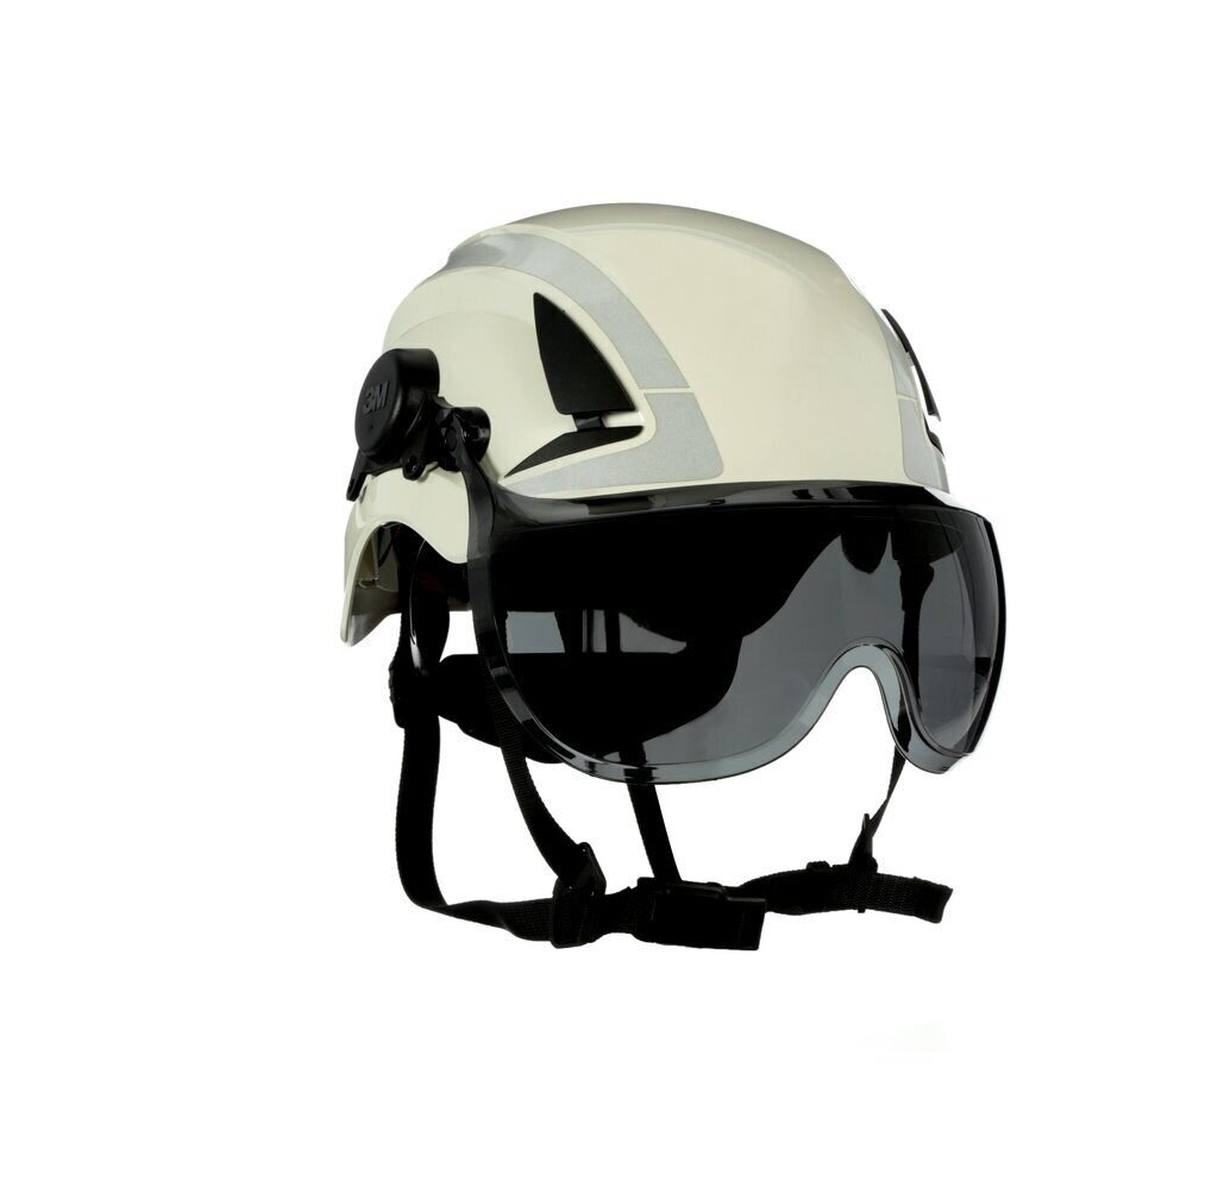 3M visera corta X5-SV02-CE para cascos de seguridad X5000 y X5500, gris, revestimiento antivaho y antirrayas, policarbonato